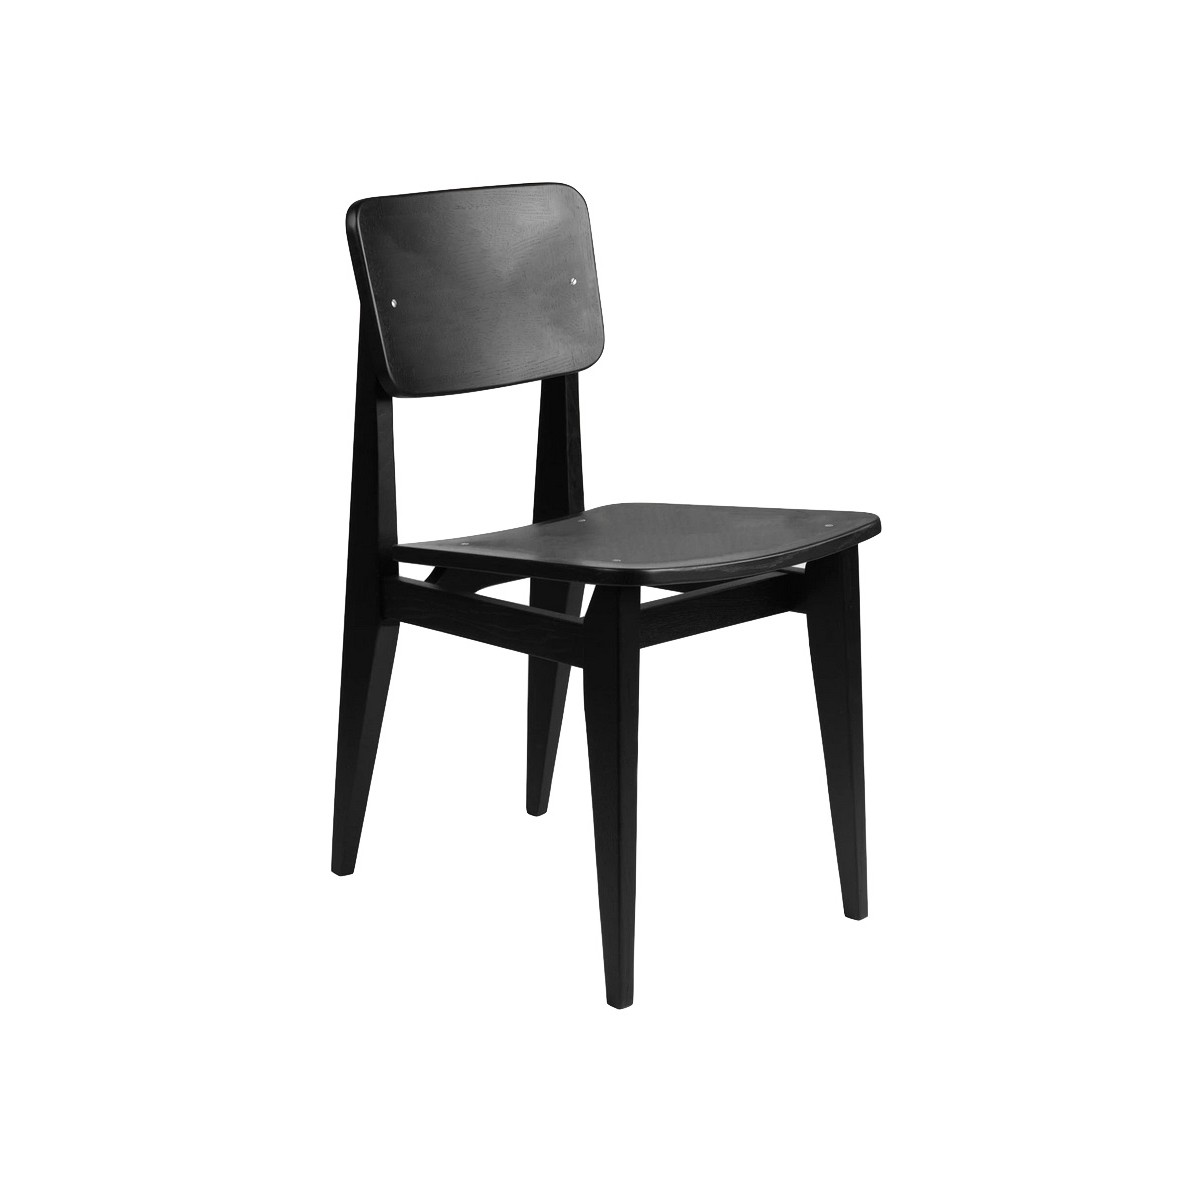 Chêne teint en noir, assise et dossier bois – C-Chair